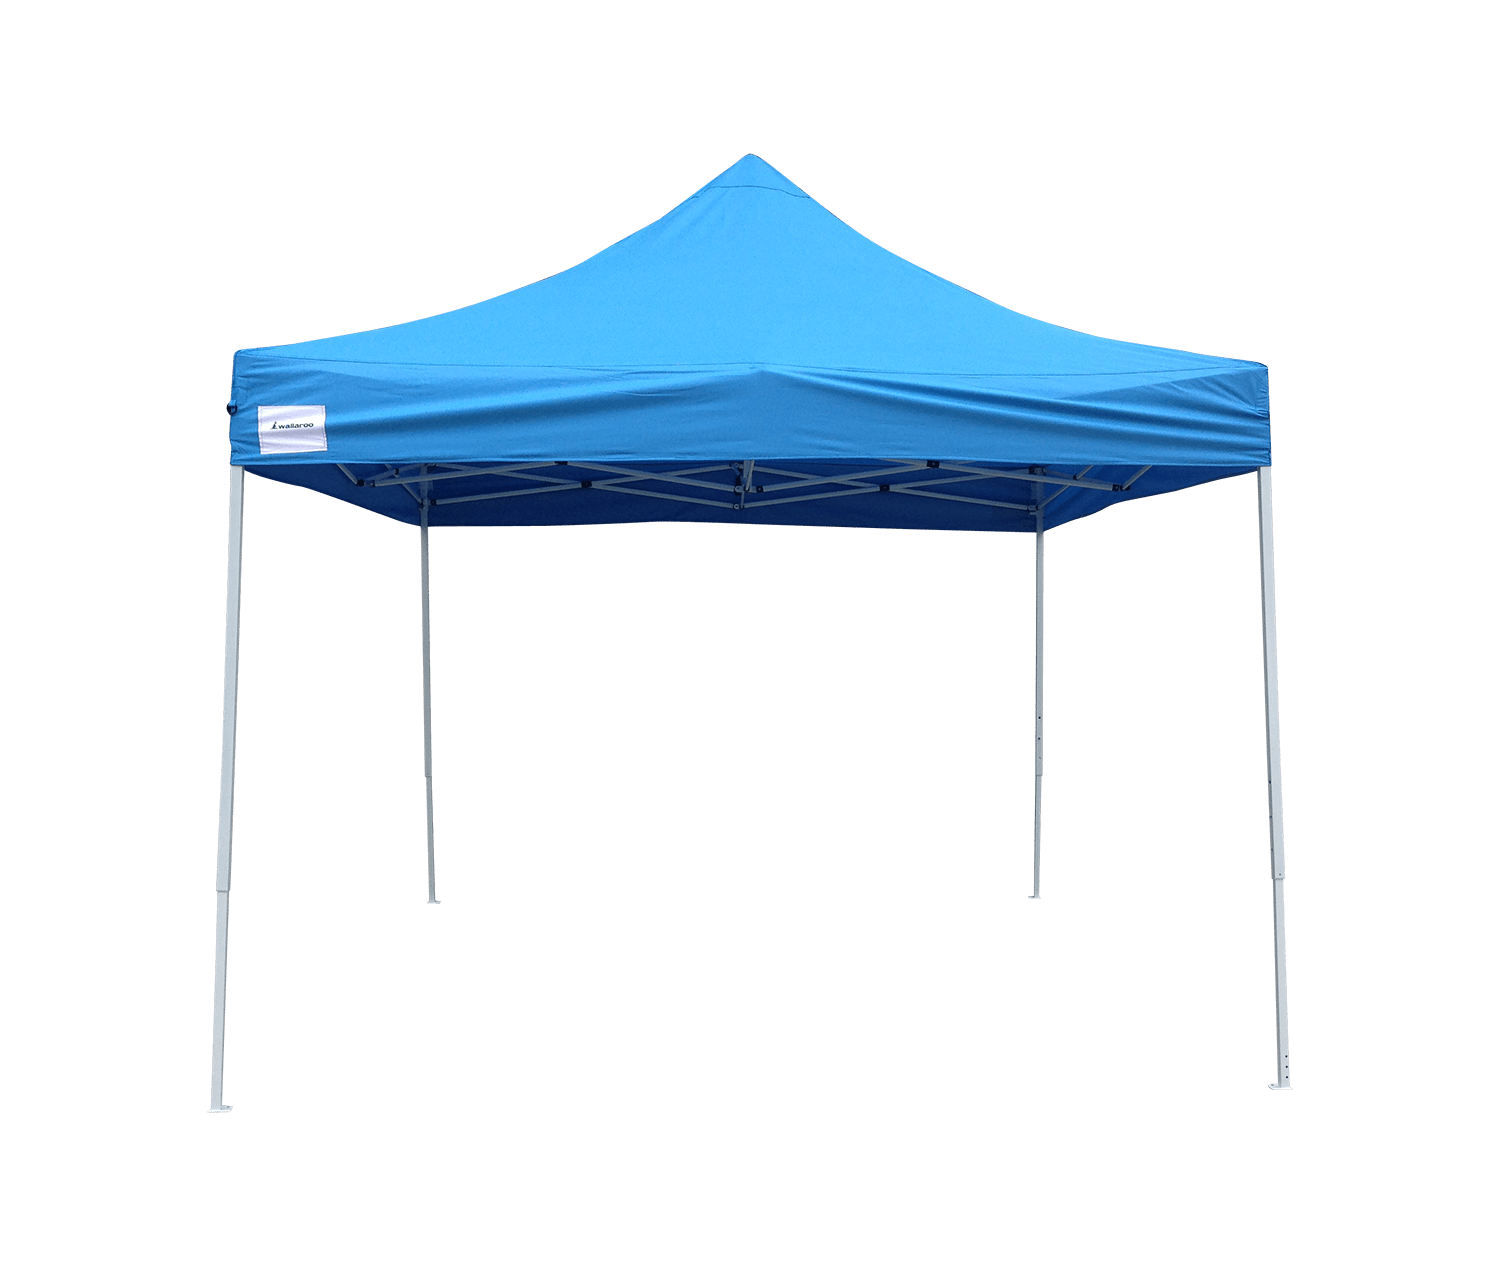 Sky blue factory pop up tent folding gazebo